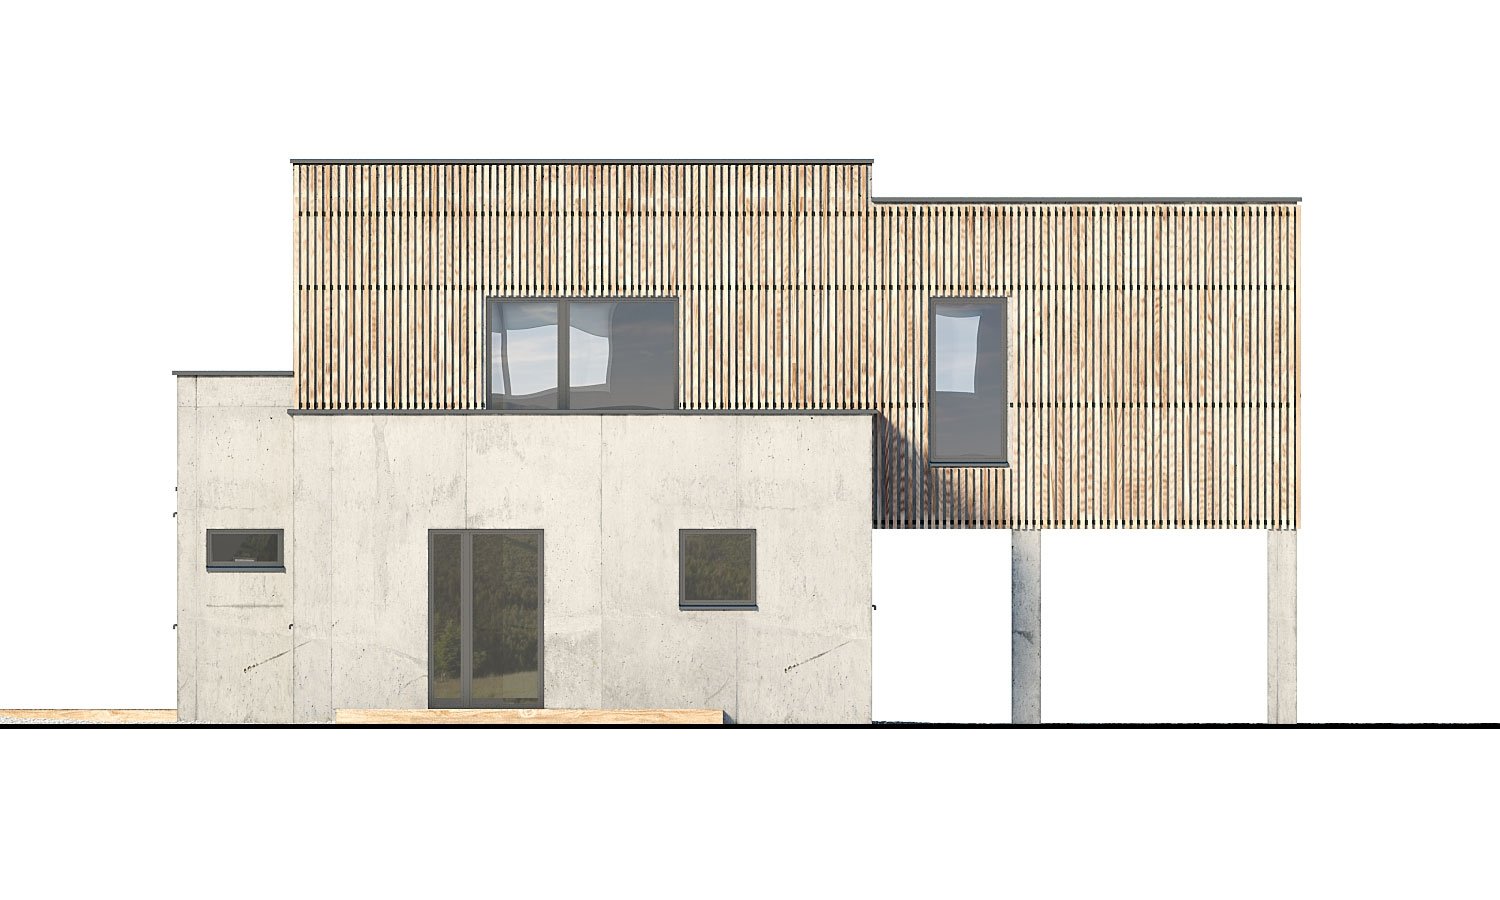 Pohľad 3. - Dvougenerační moderní rodinný dům s plochou střechou s krytým stáním pro auta.